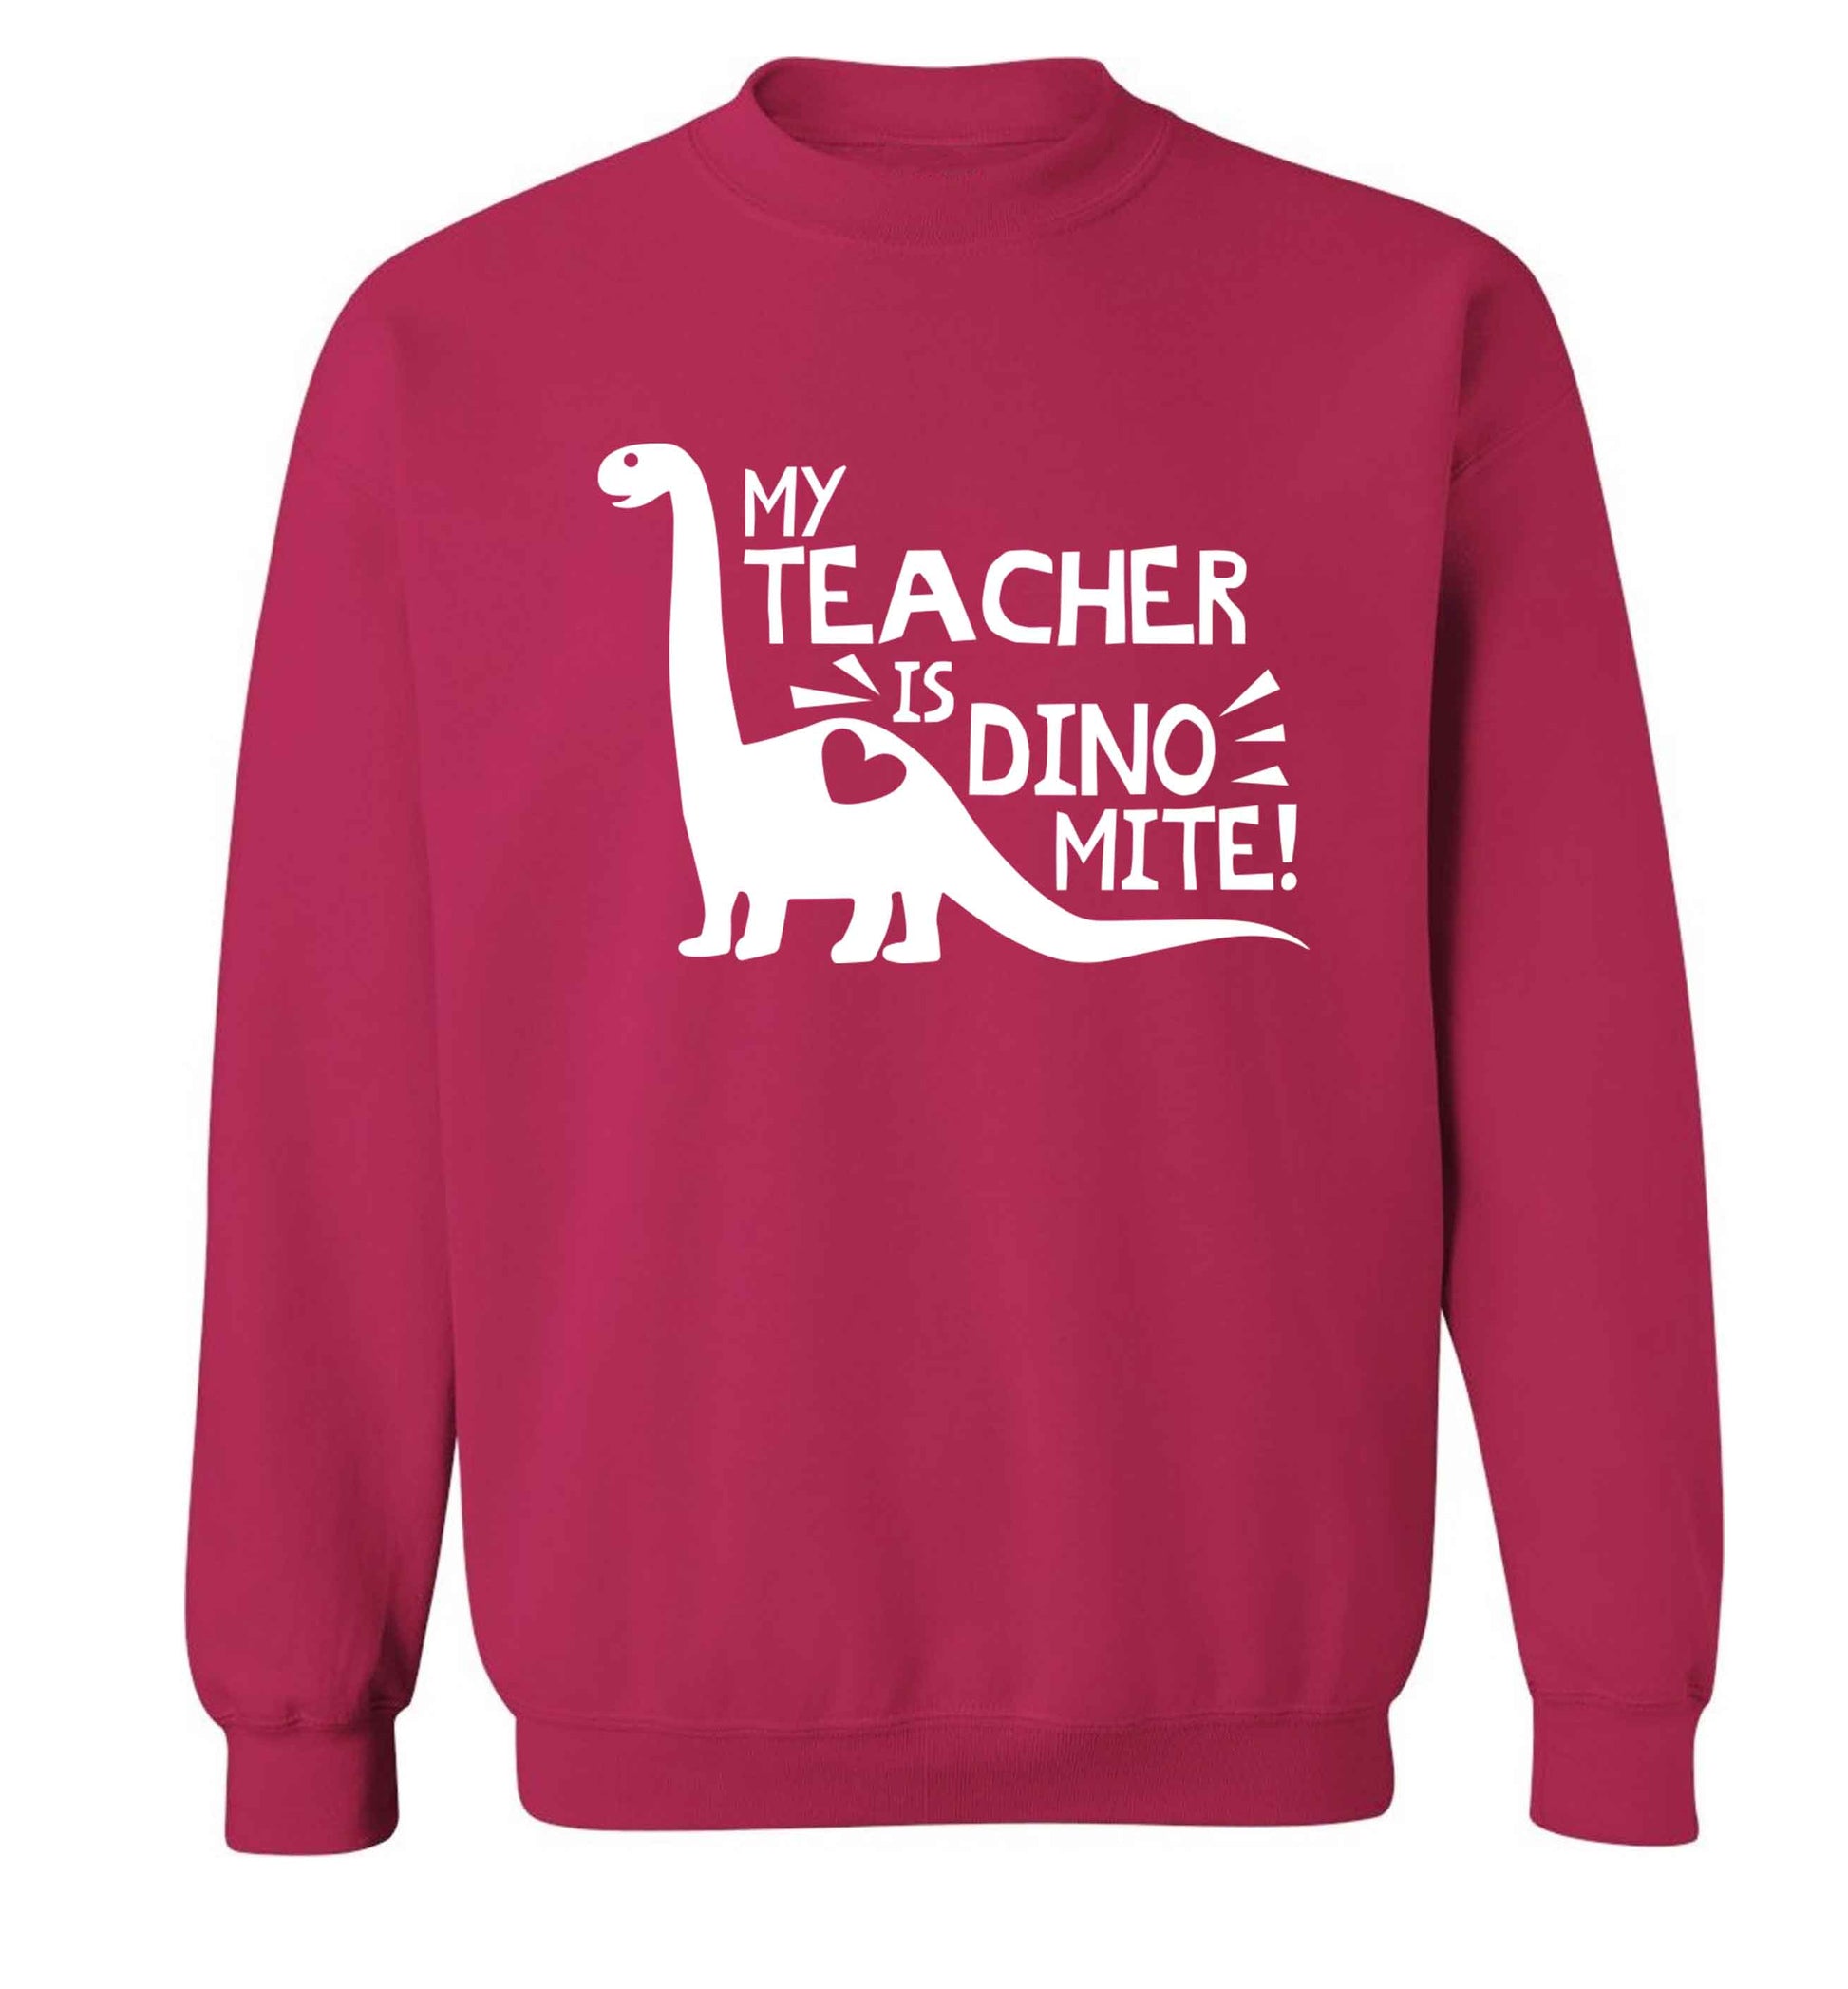 My teacher is dinomite! Adult's unisex pink Sweater 2XL